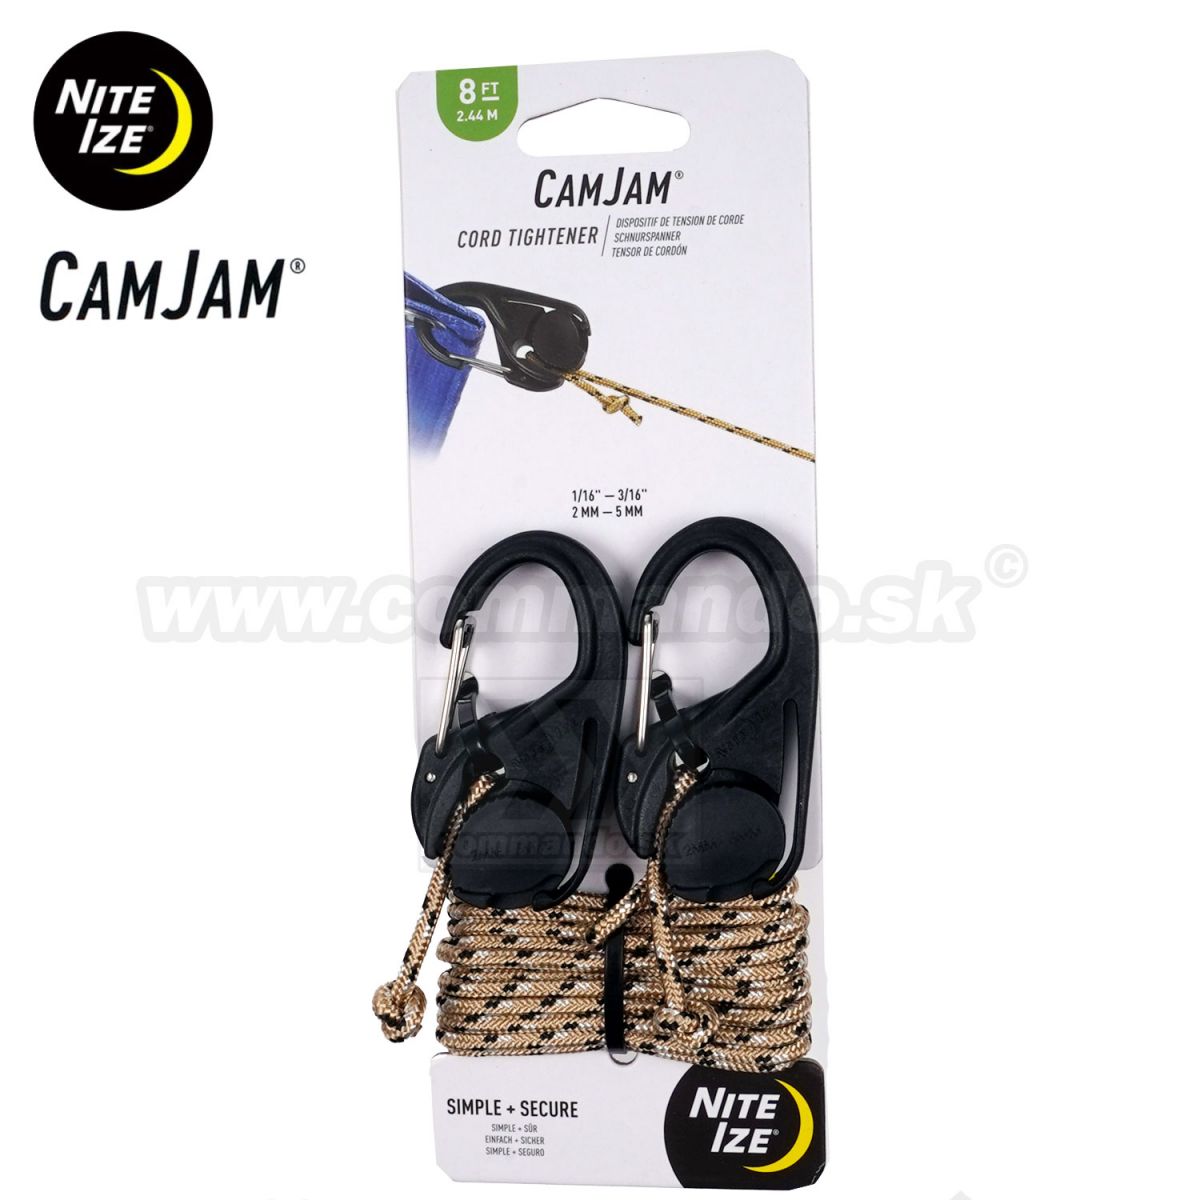 CamJam® 2ks Cord Tightener Nite Ize® NCJ-25-2R3